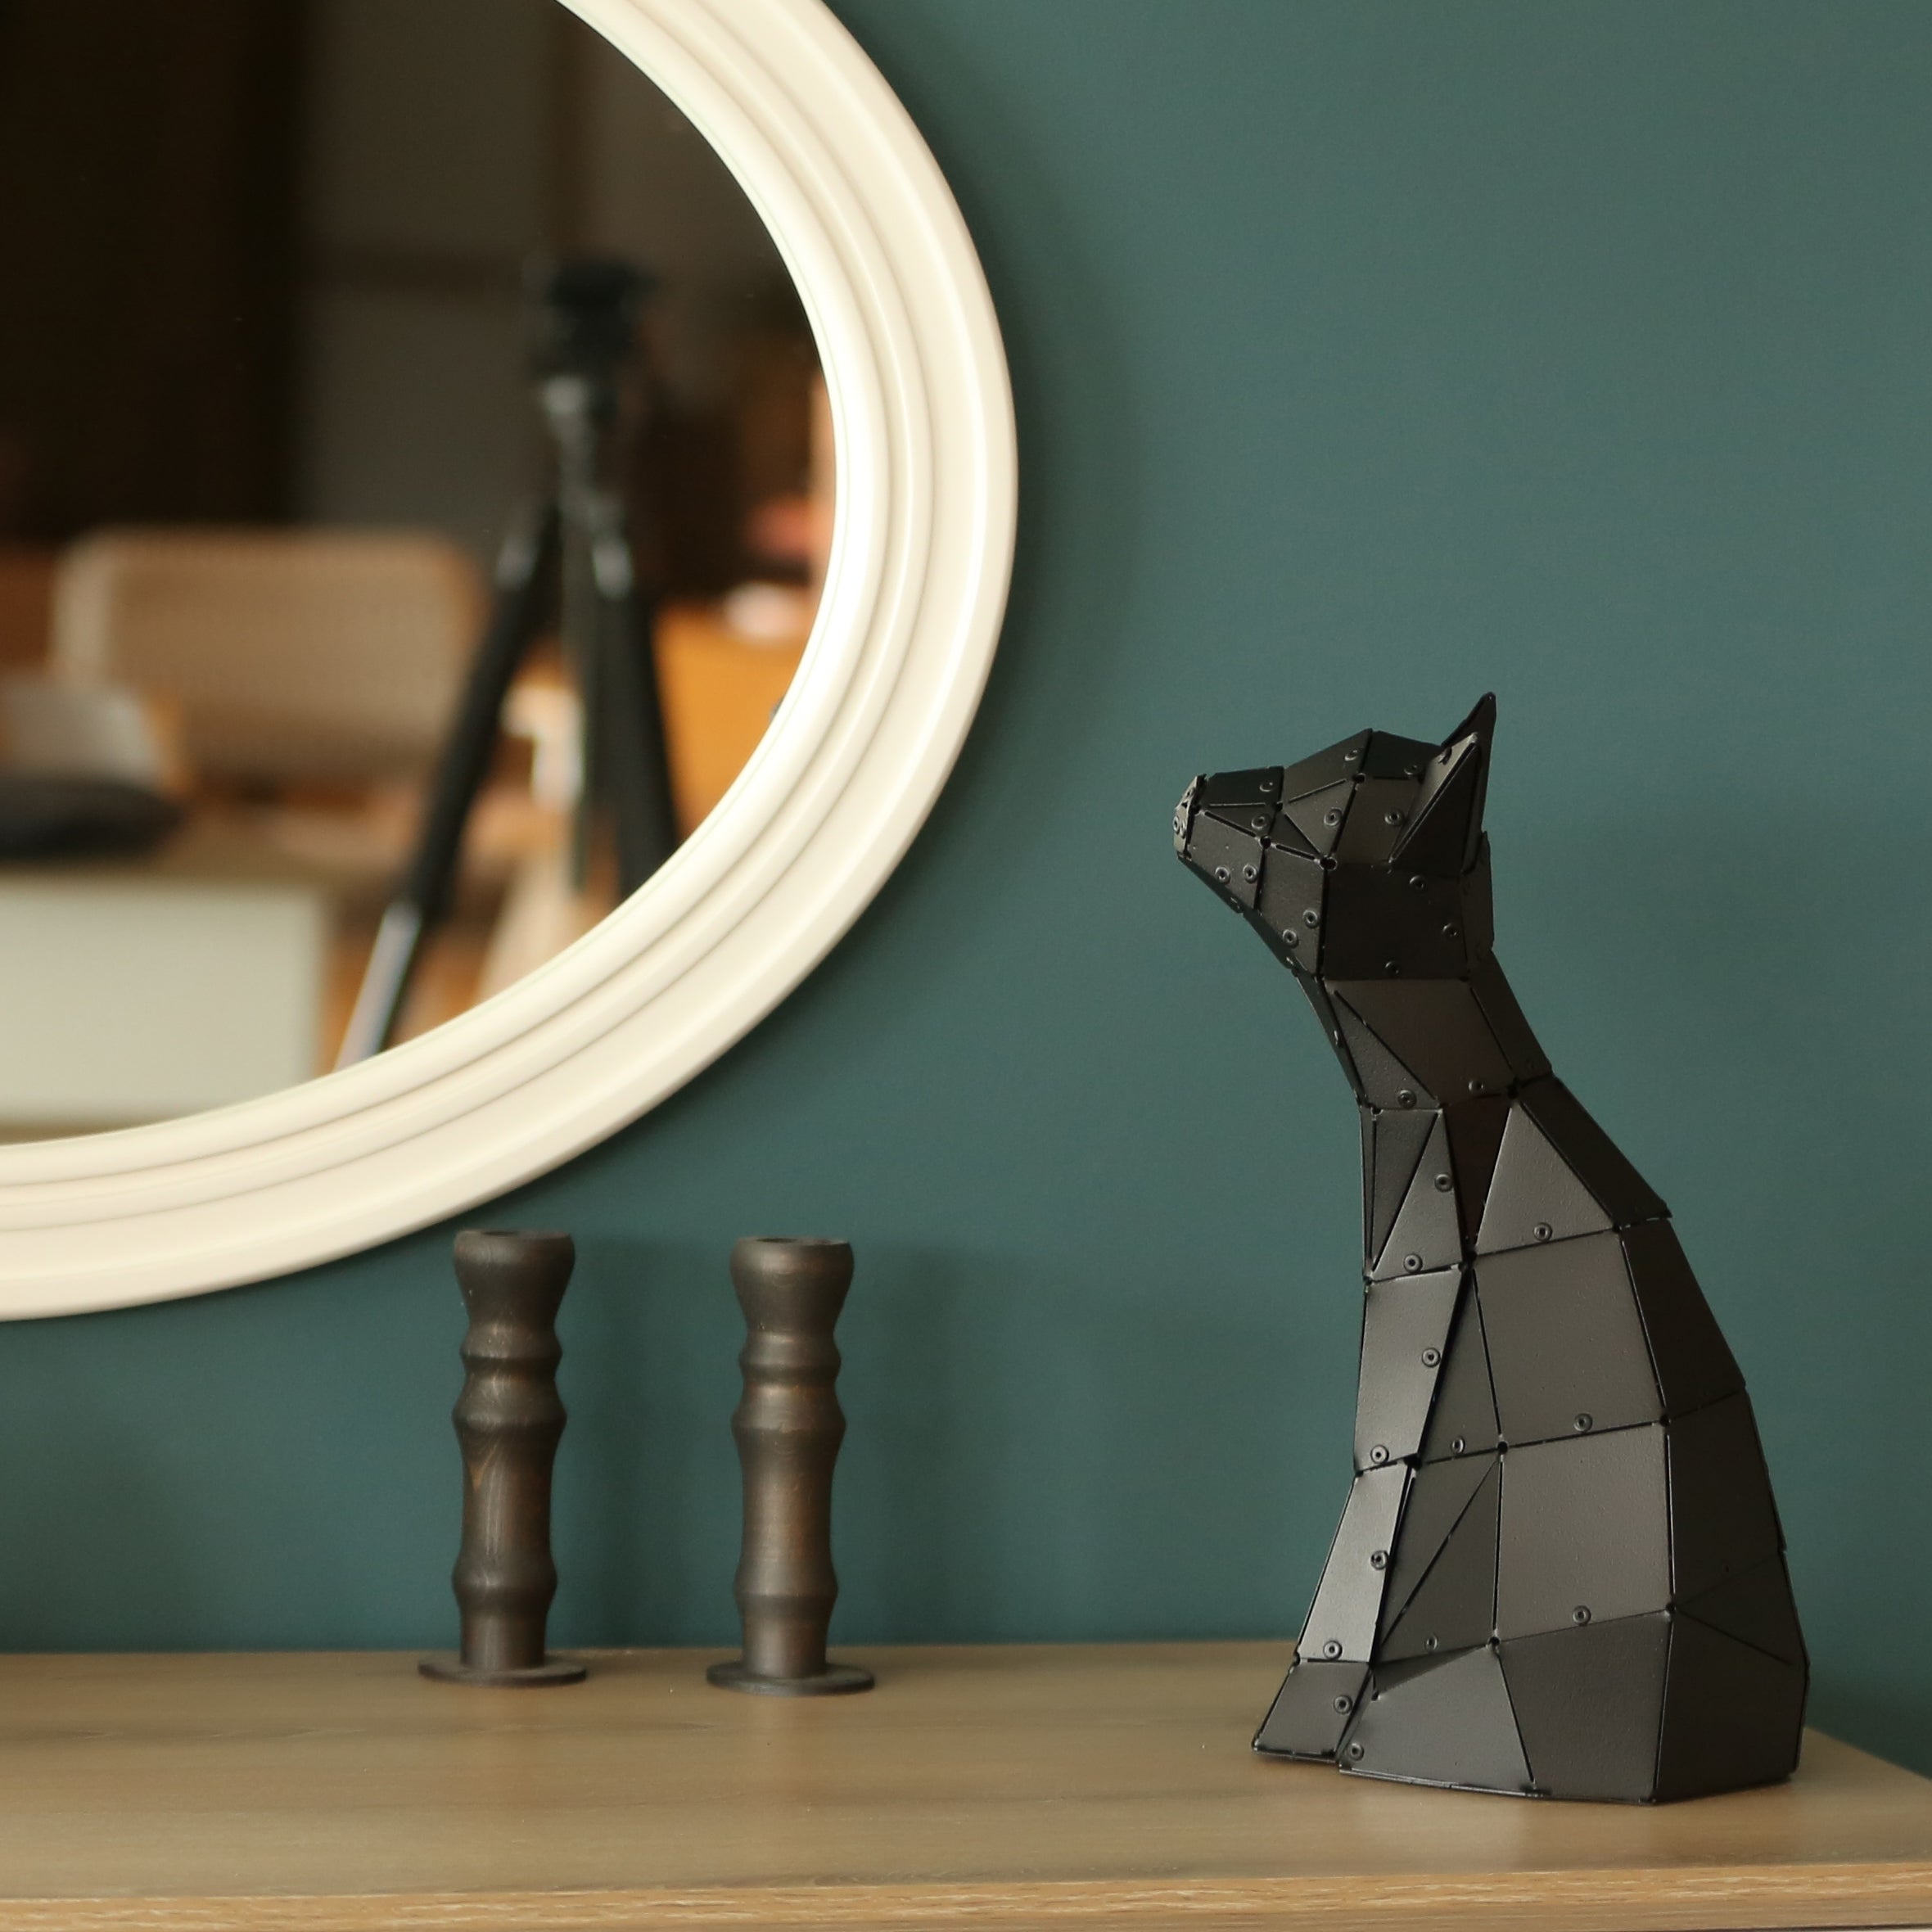 3D Geometric Art of Cat